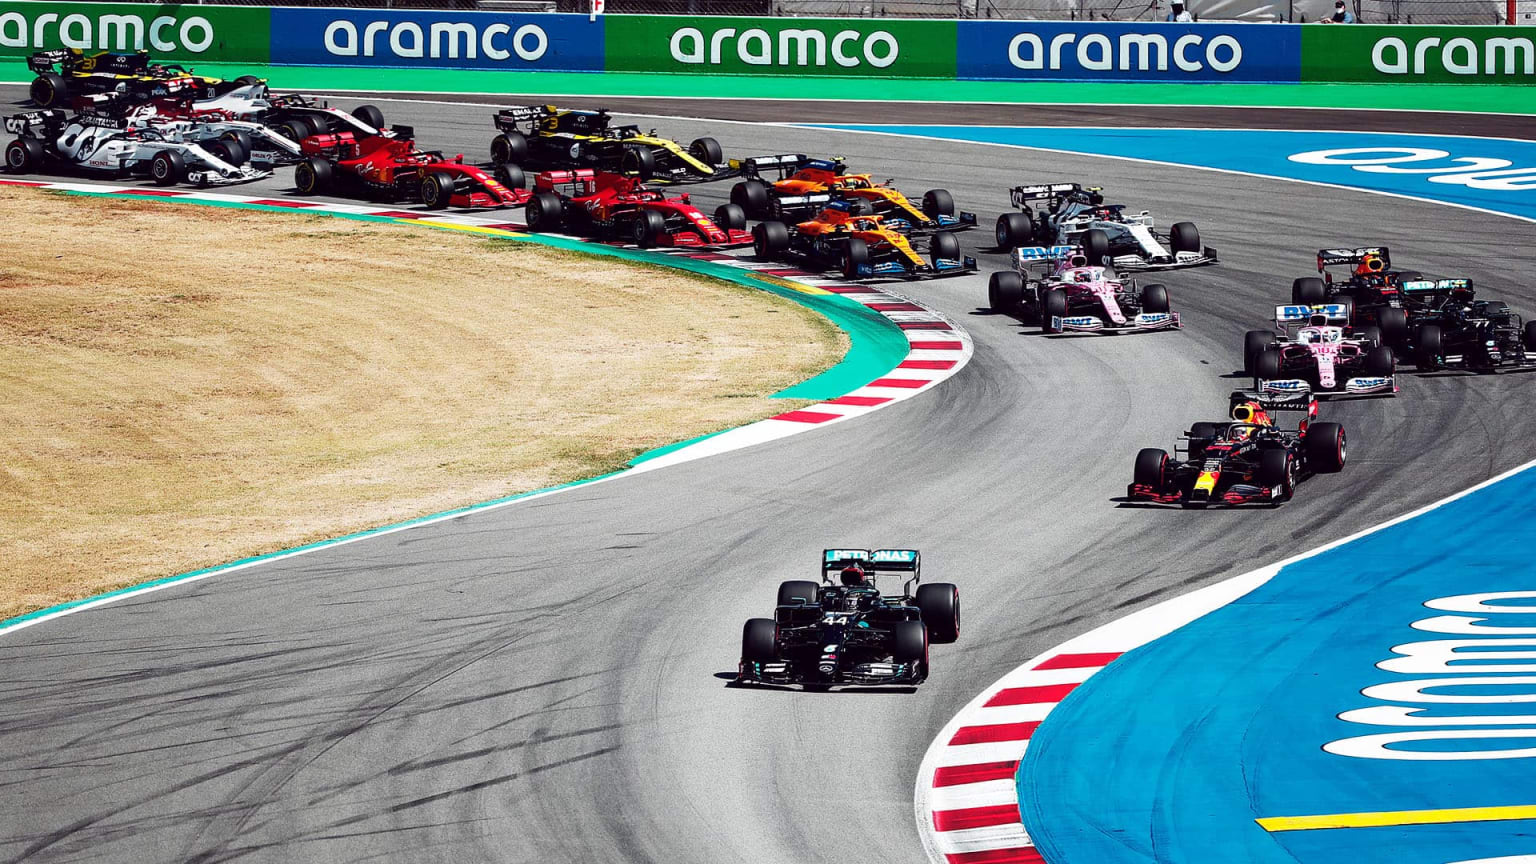 Spanish Grand Prix F1 Race